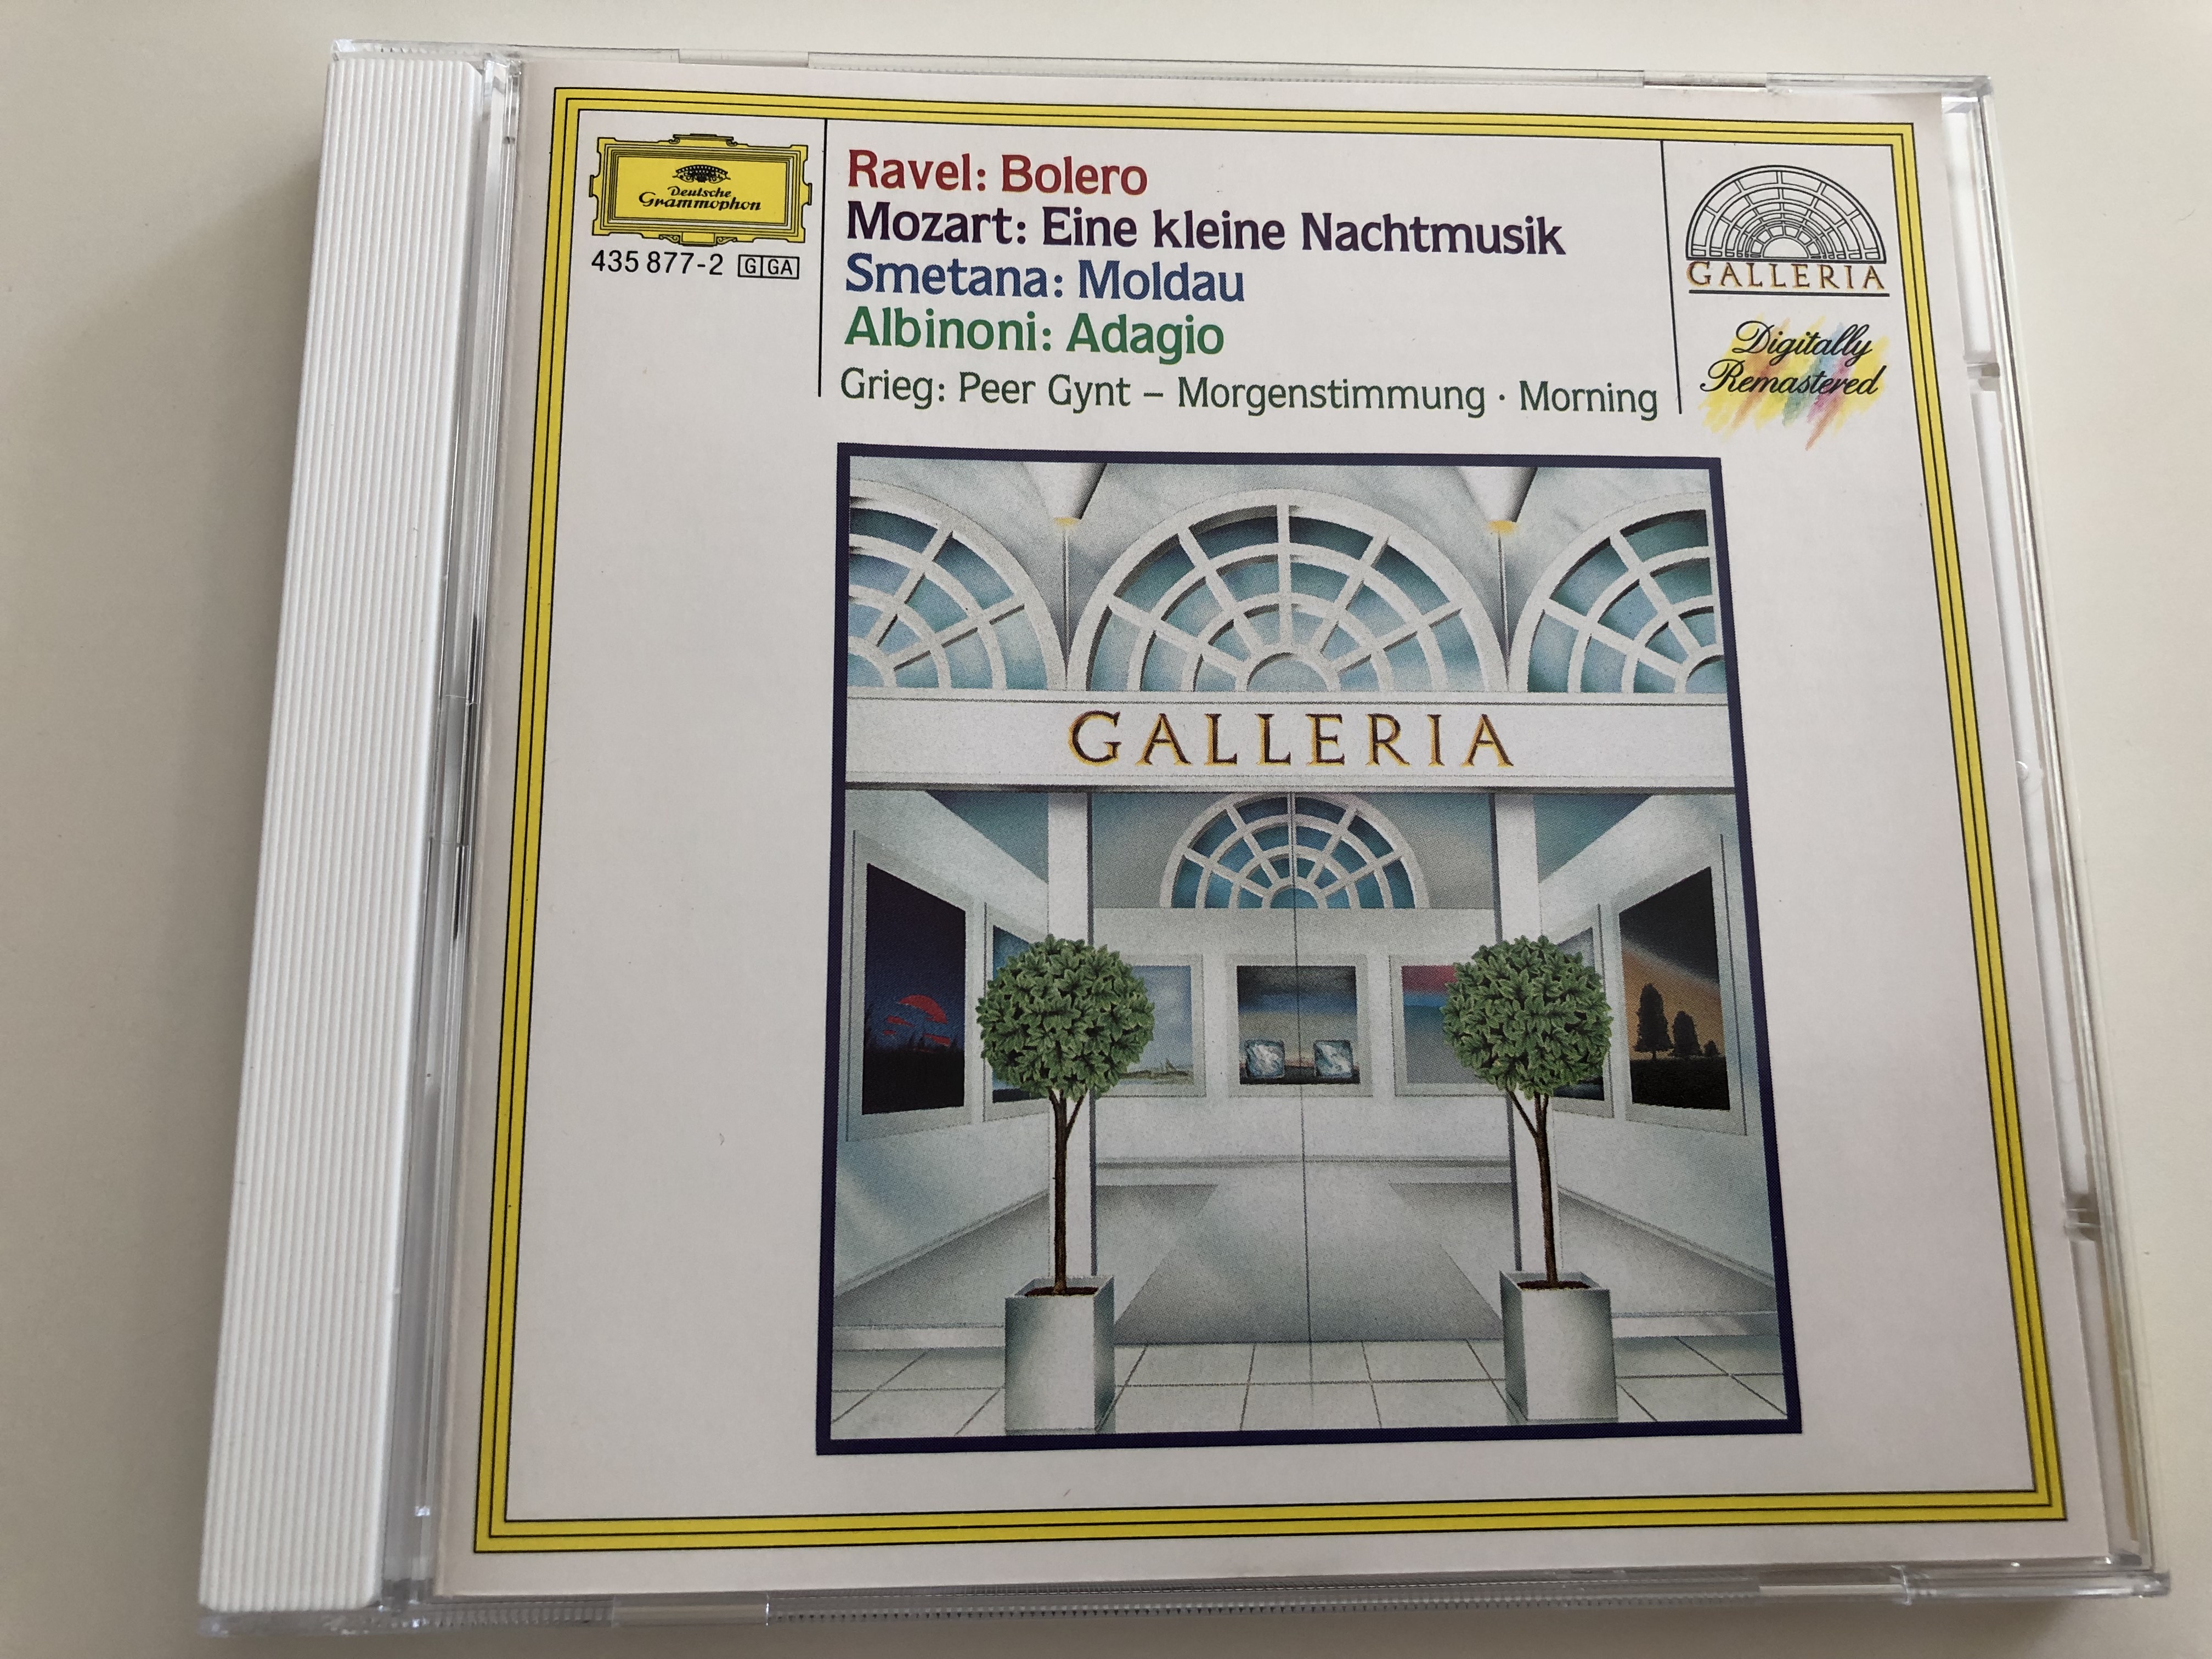 galleria-ravel-bolero-mozart-eine-kleine-nachtmusik-smetana-moldau-albinoni-adagio-grieg-peer-gynt-morgenstimmung-morning-deutsche-grammophon-audio-cd-435-877-2-1-.jpg